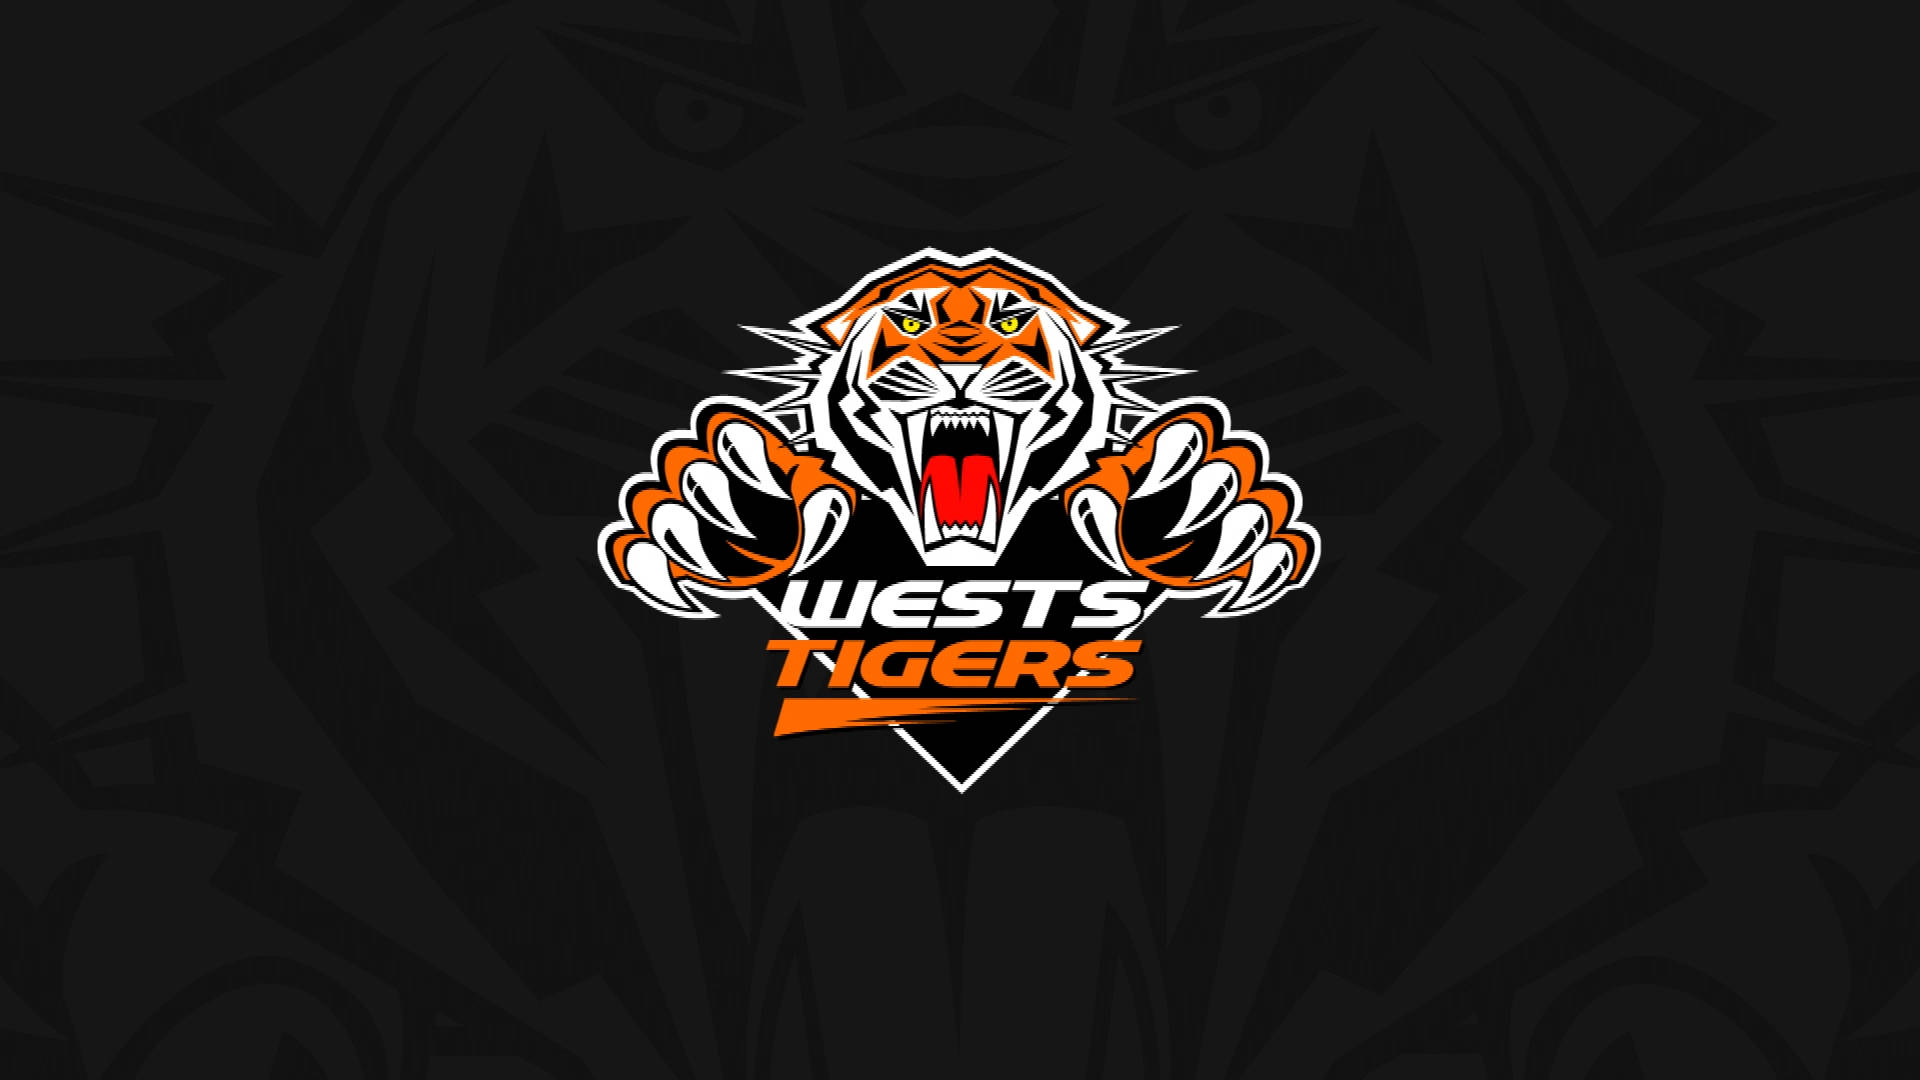 Det NRL West Tigers logo præger det livlige tapet. Wallpaper